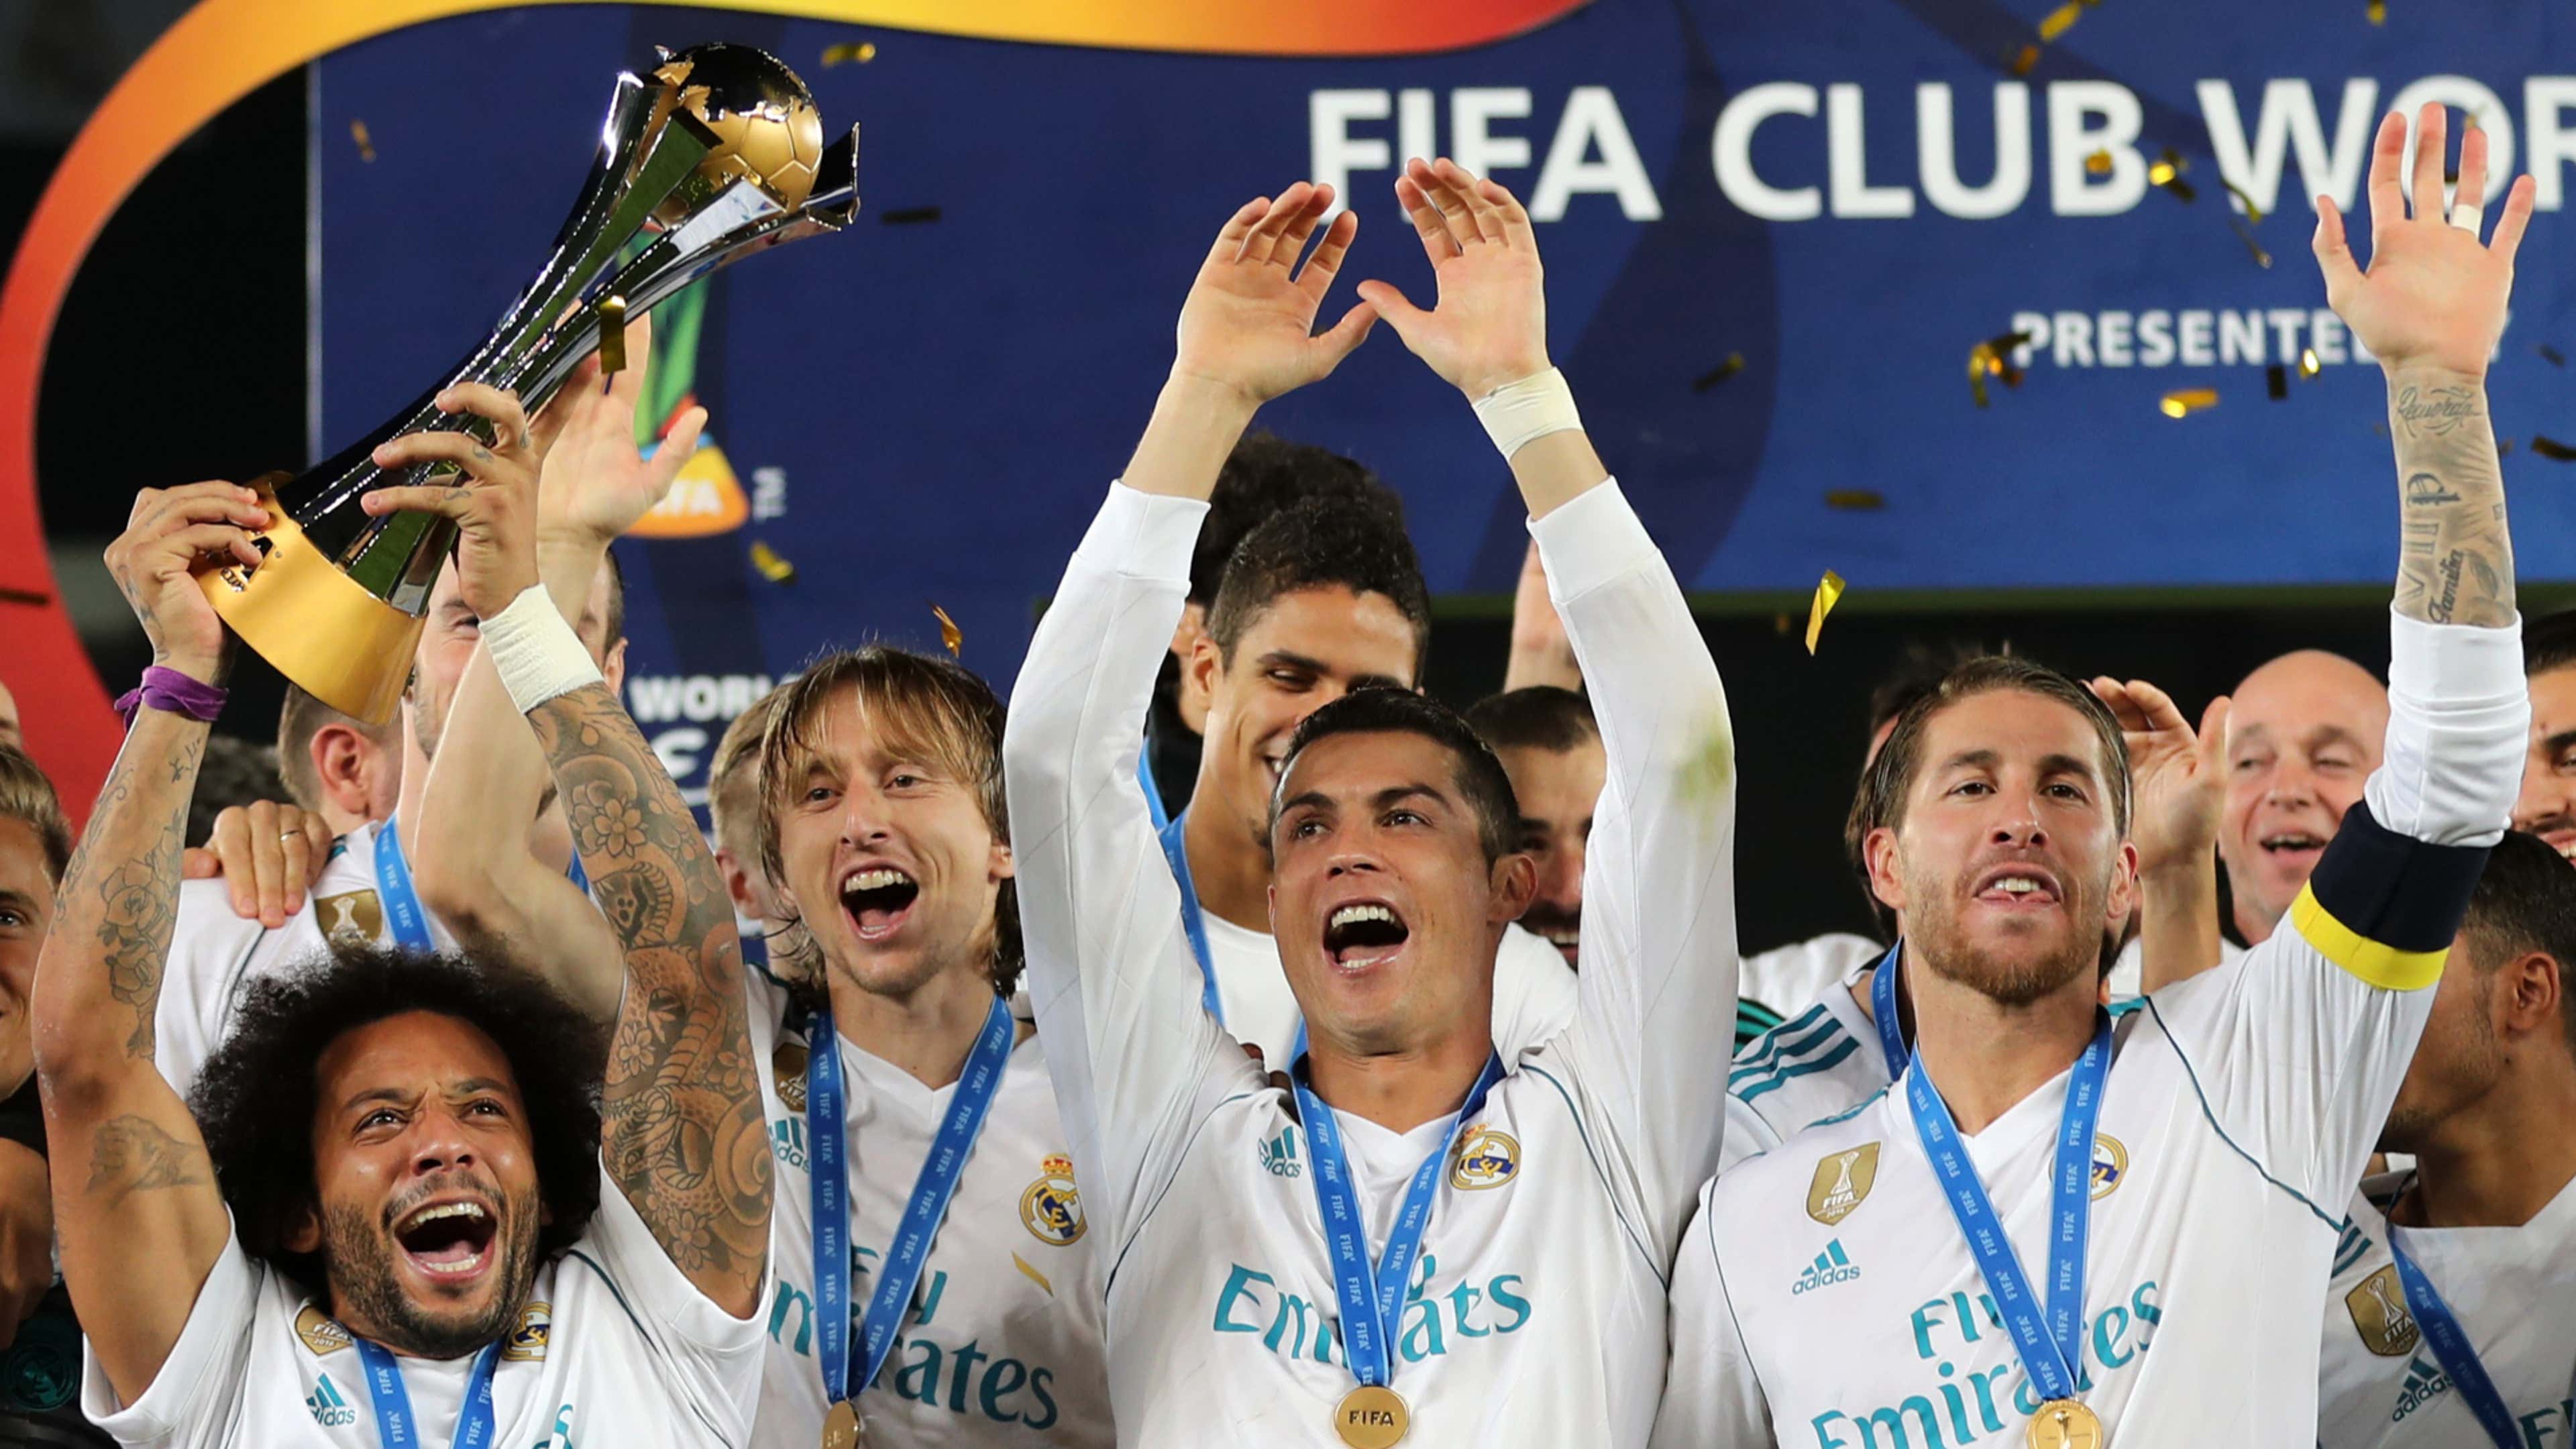 Real Madrid tricampeão mundial de clubes - Três Pontos